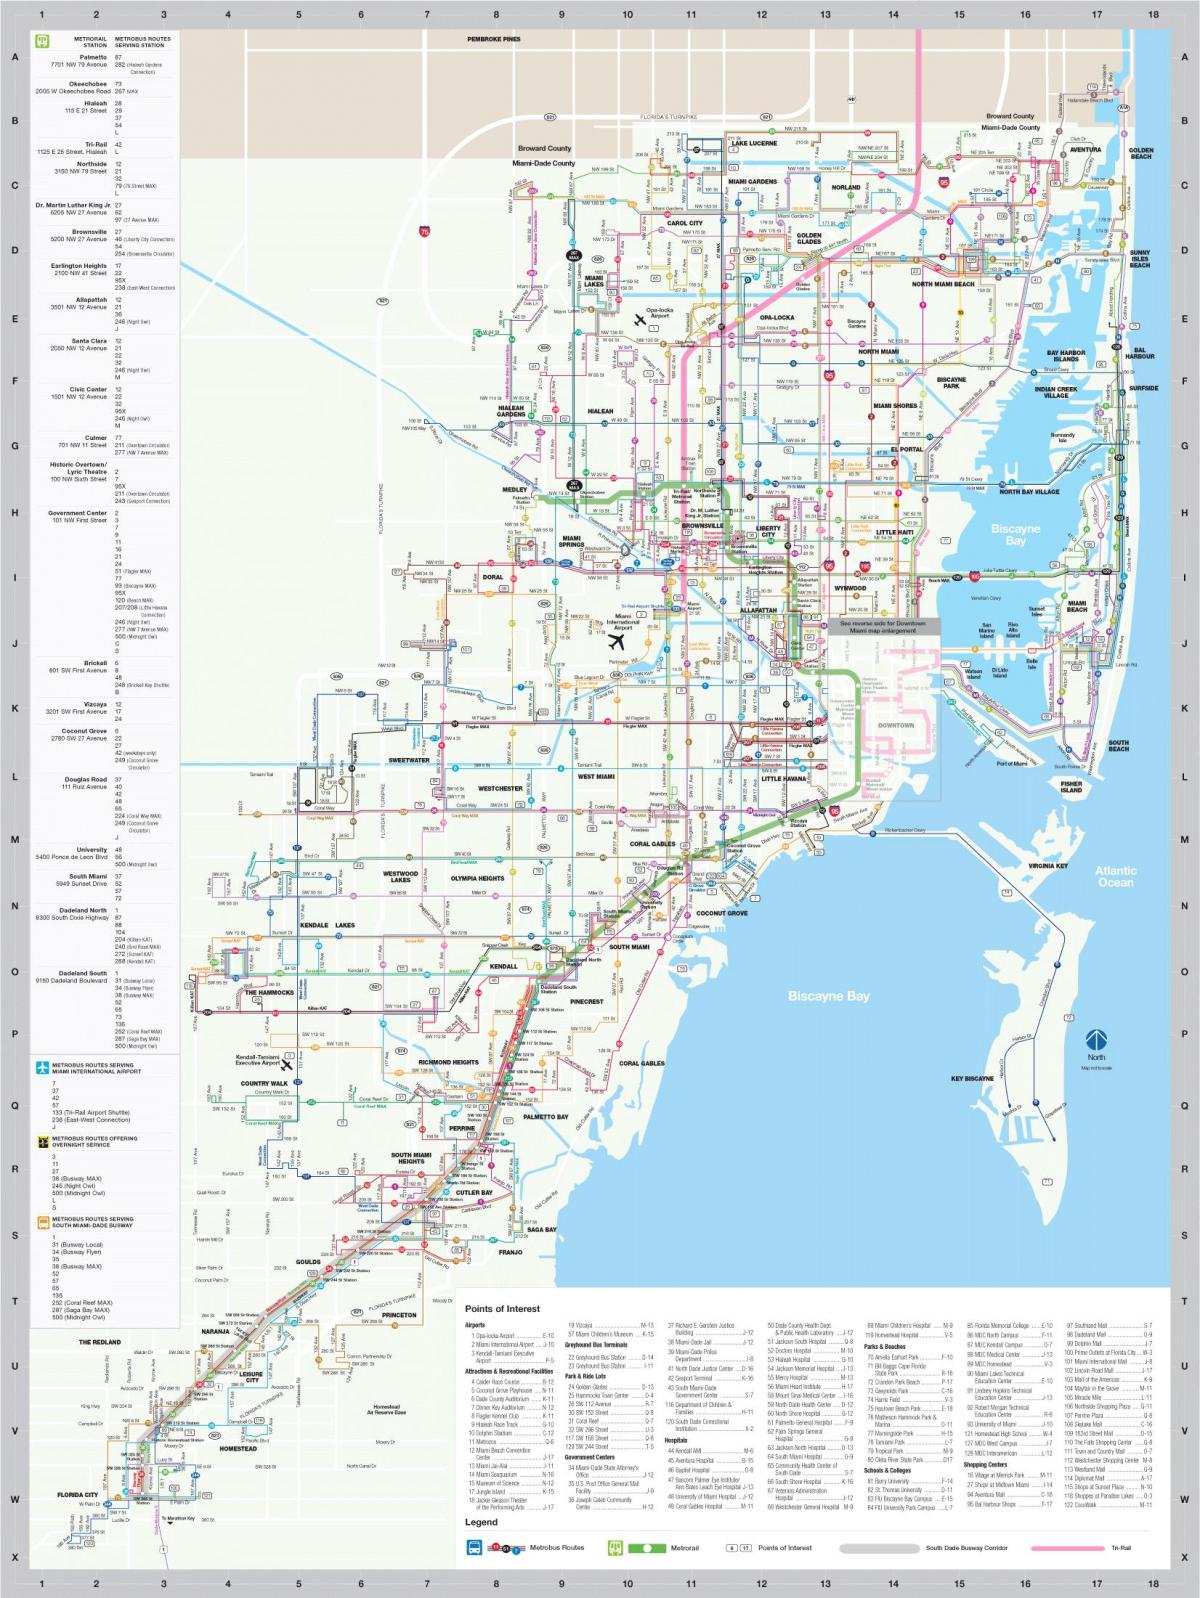 Plan des stations bus de Miami